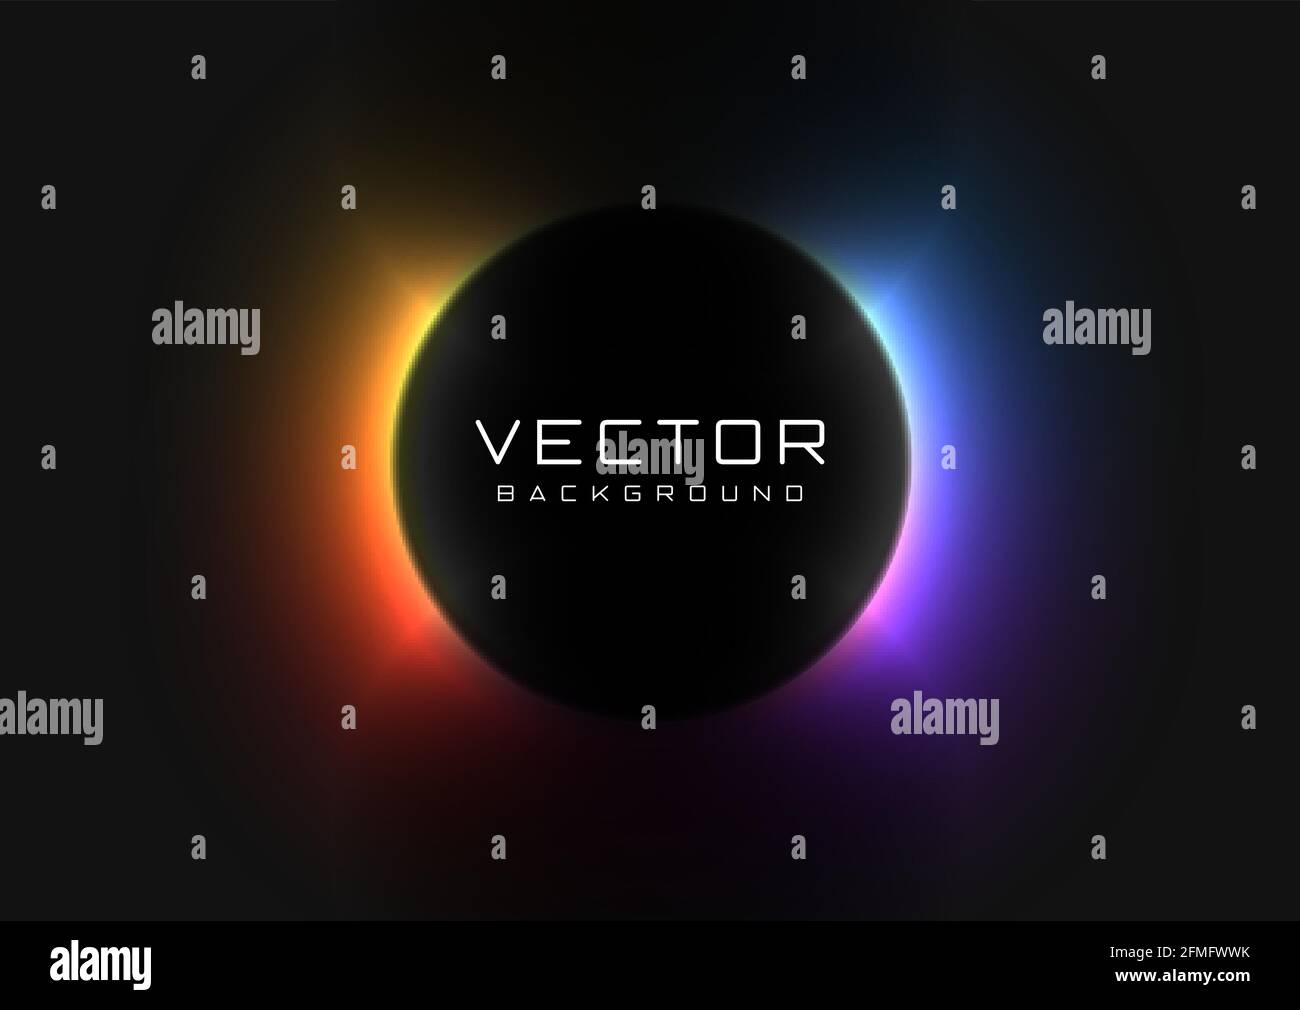 Abstrakter Hintergrund mit lebhaftem, farbenprächtiges Neon-Licht hinter dem schwarzen Kreis. Eclipse-Konzept. Design von Banner, Poster, Flyer für den Cybersport und Stock Vektor